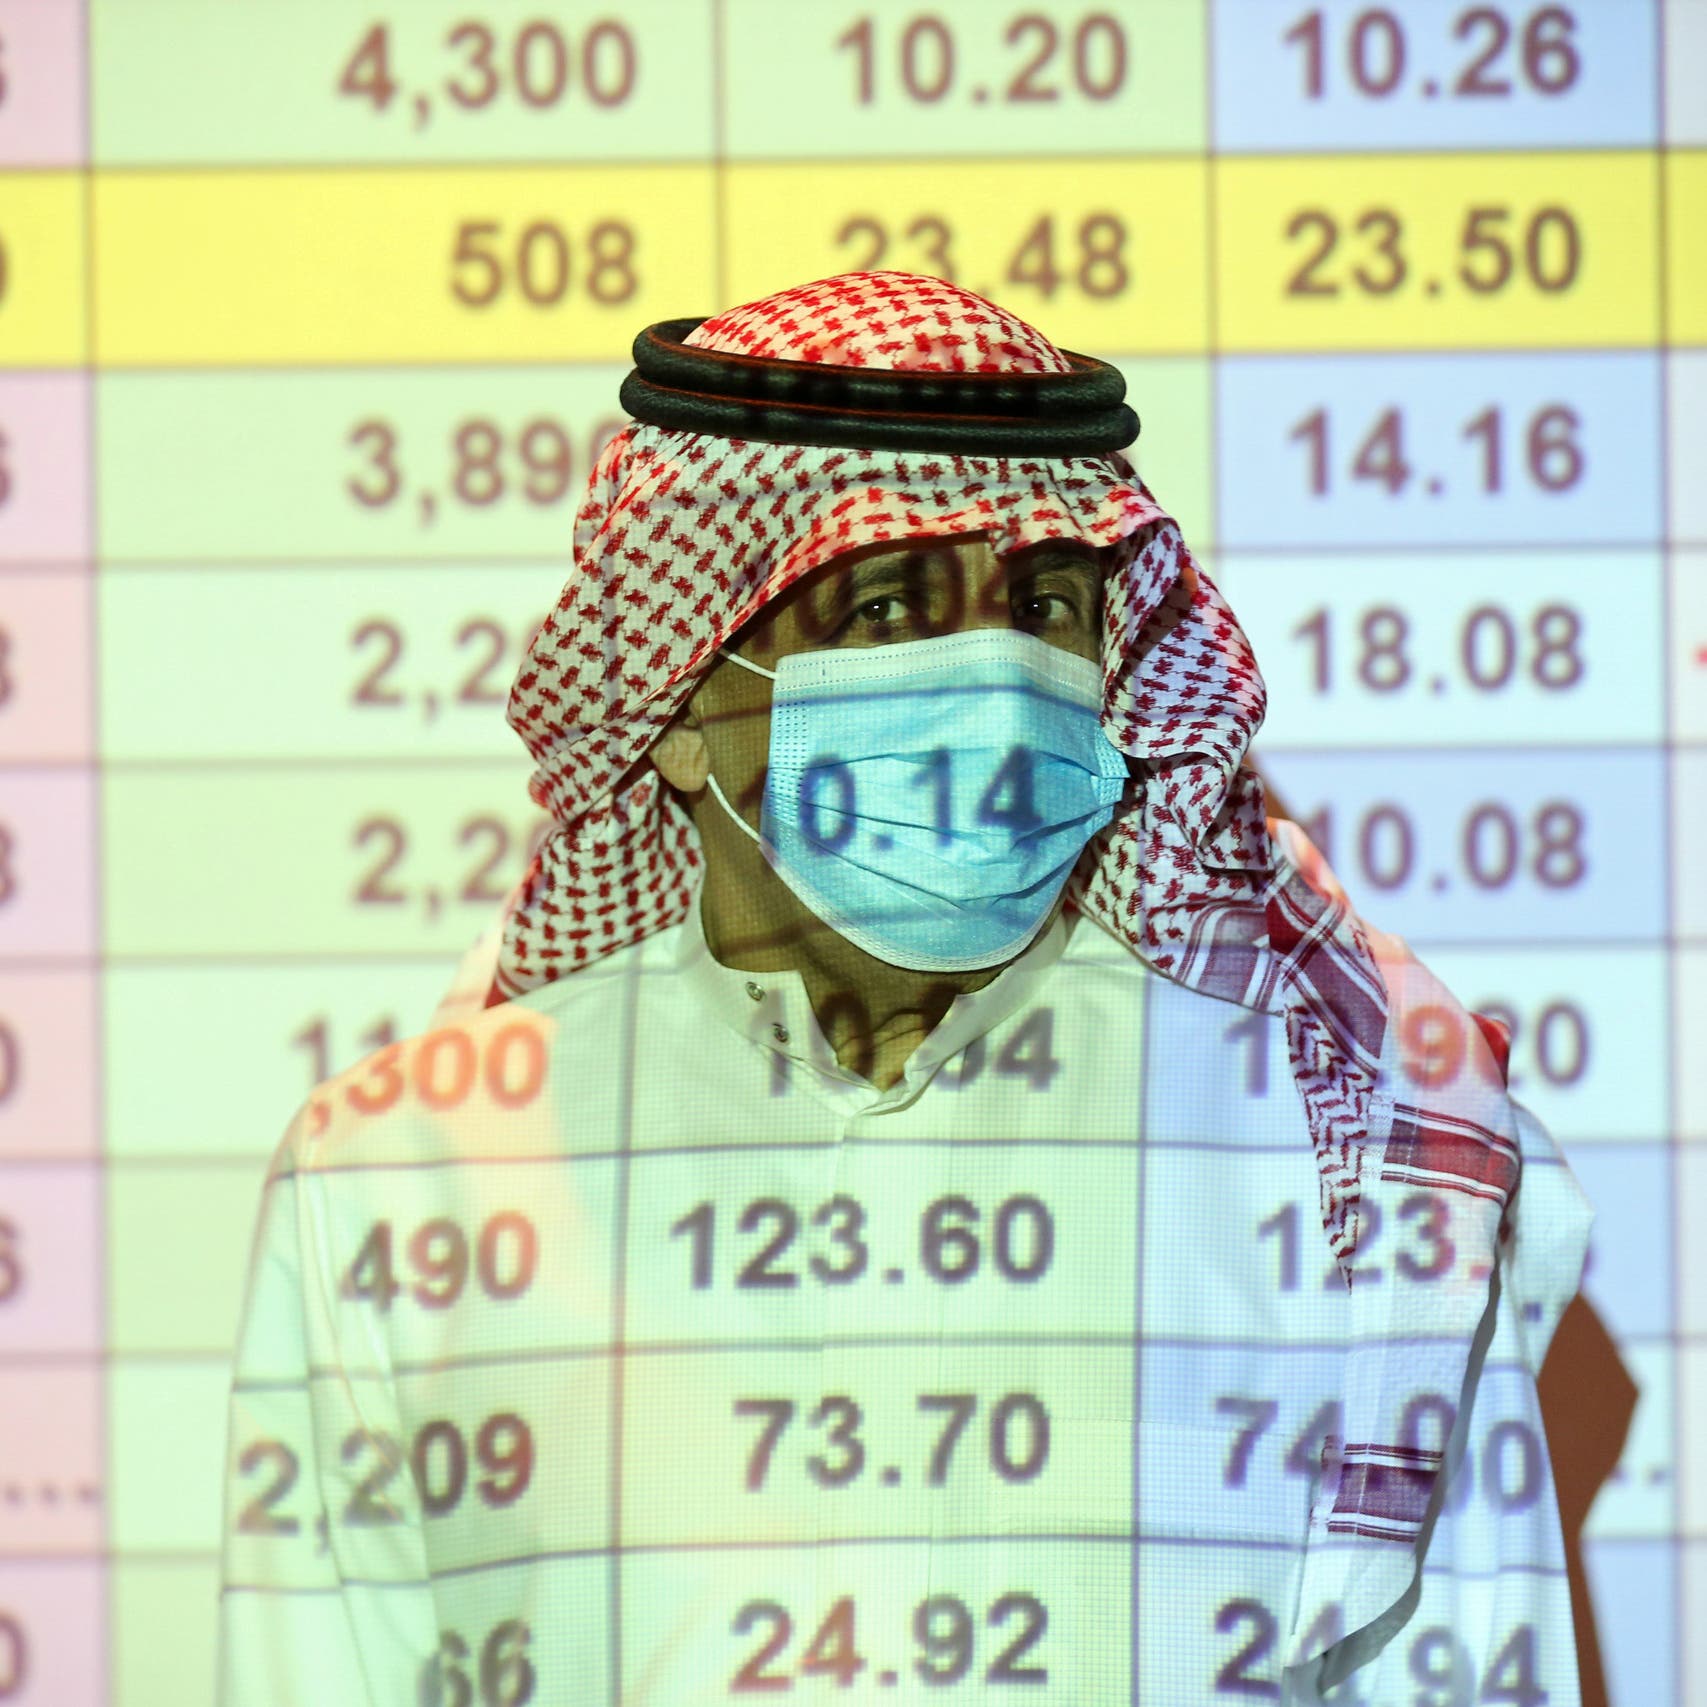 تراجع جماعي للأسواق العربية.. والسوق السعودية تقلص خسائرها لـ 1.7%